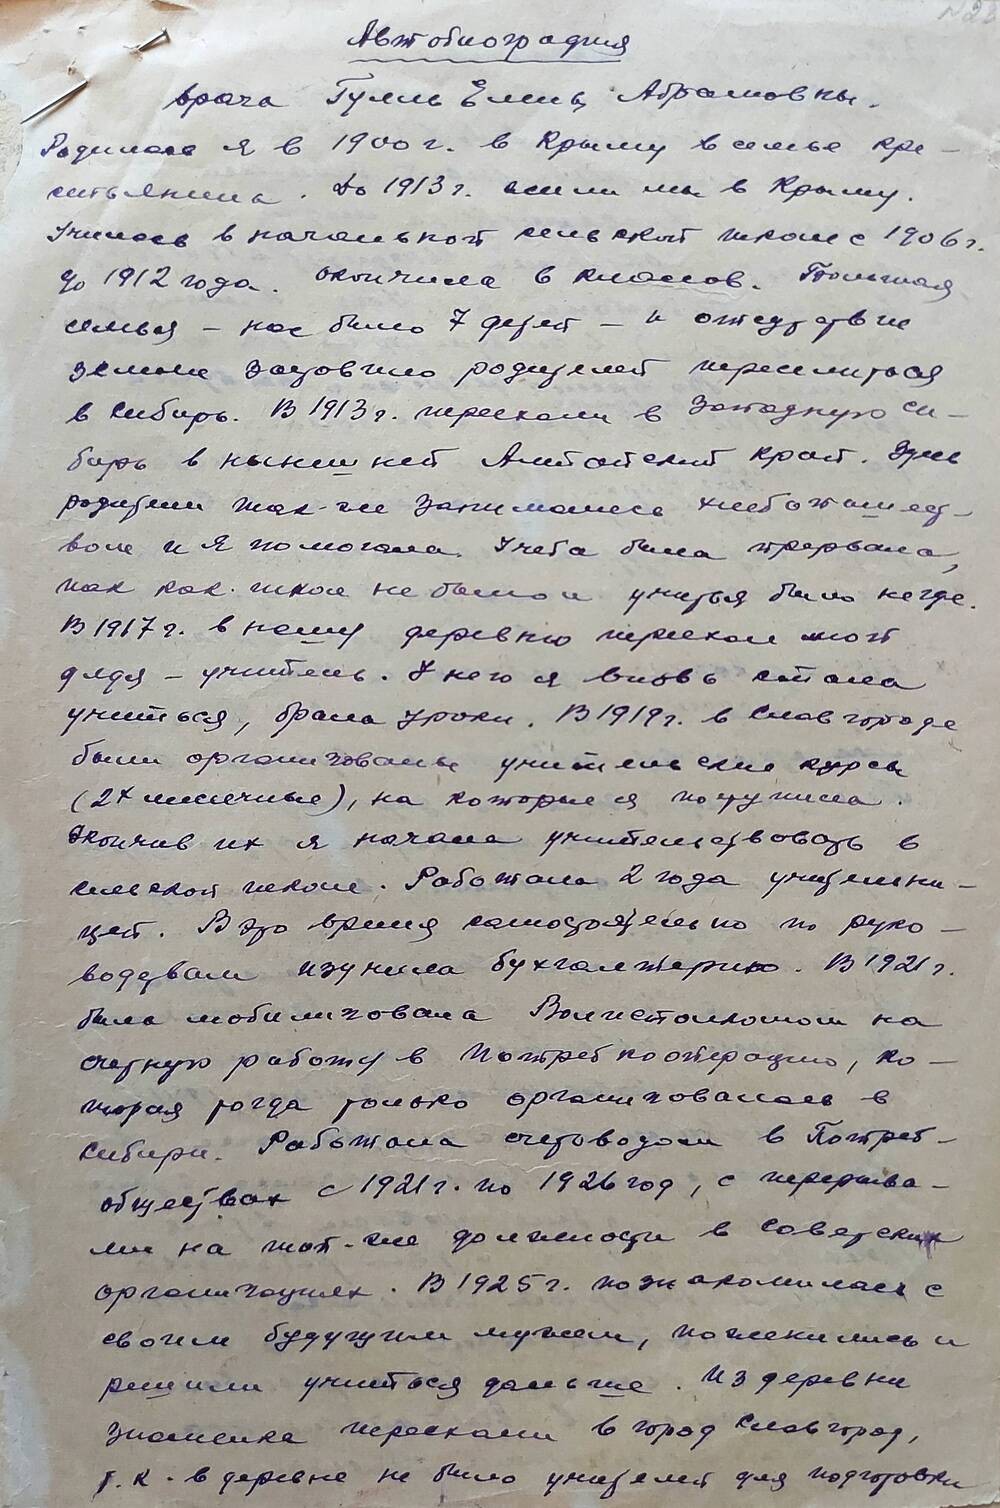 Автобиография на Гулль Елену Абрамовну - врача, 1900 года рождения, члена КПСС с 1957 года.